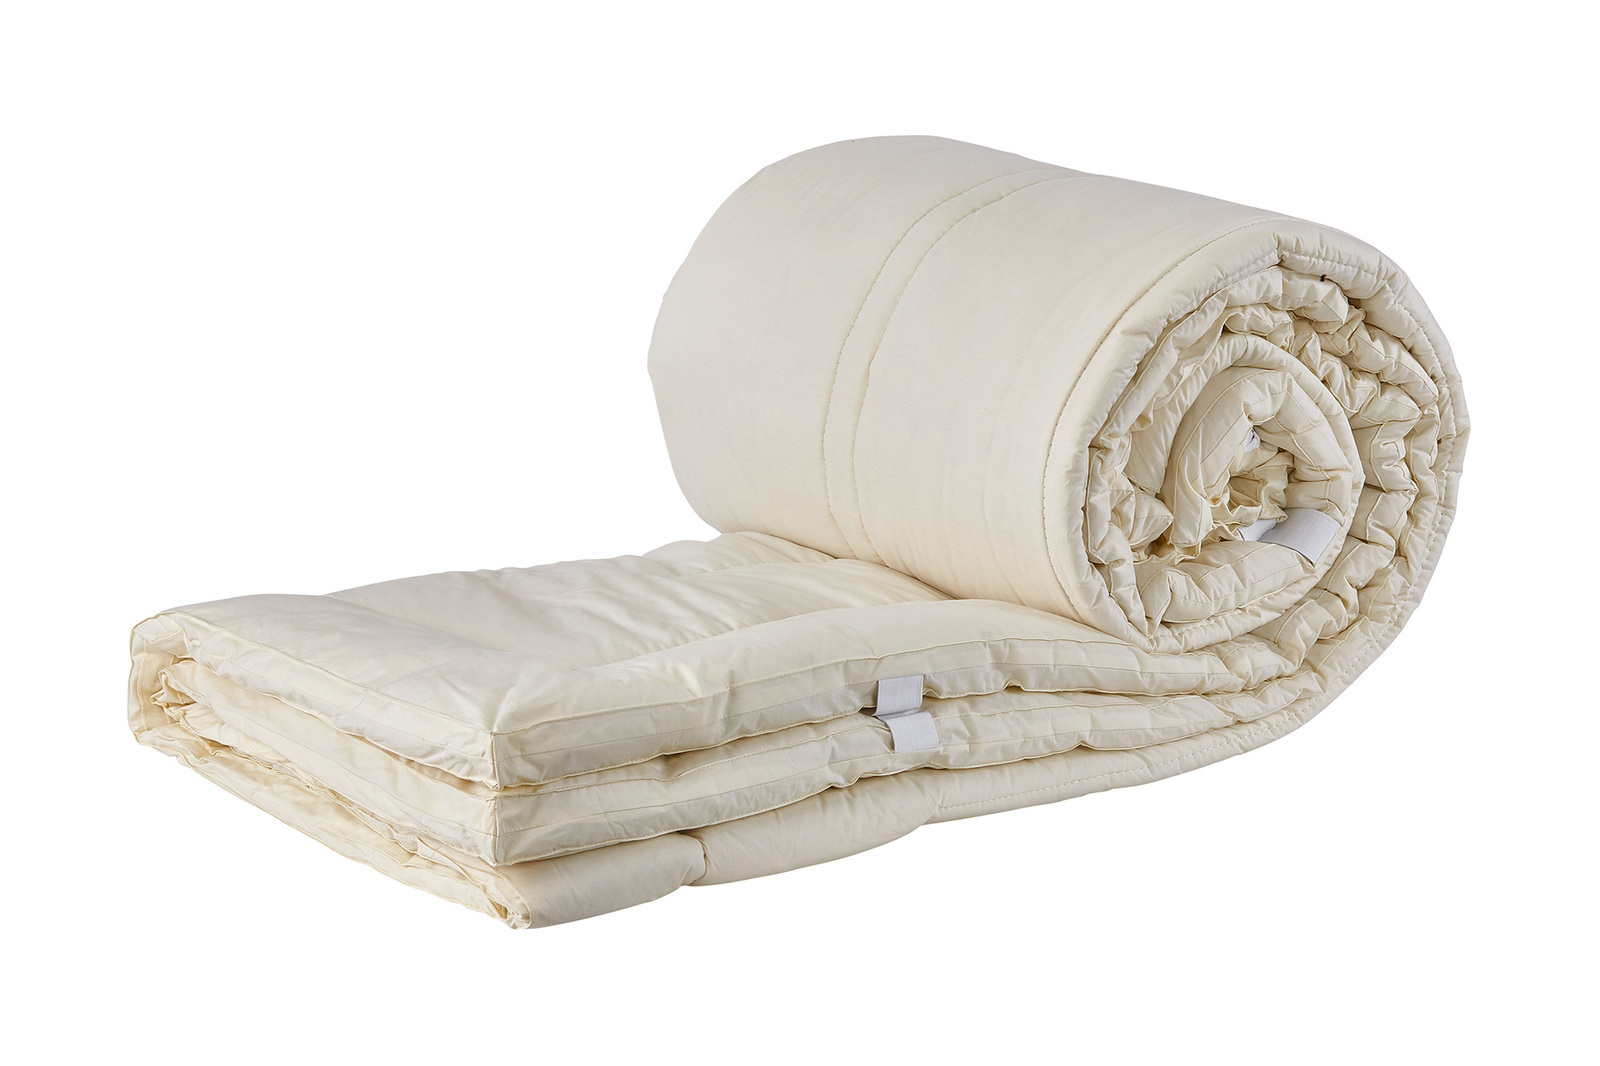 mattress pad queen deluxe 100 virgin wool